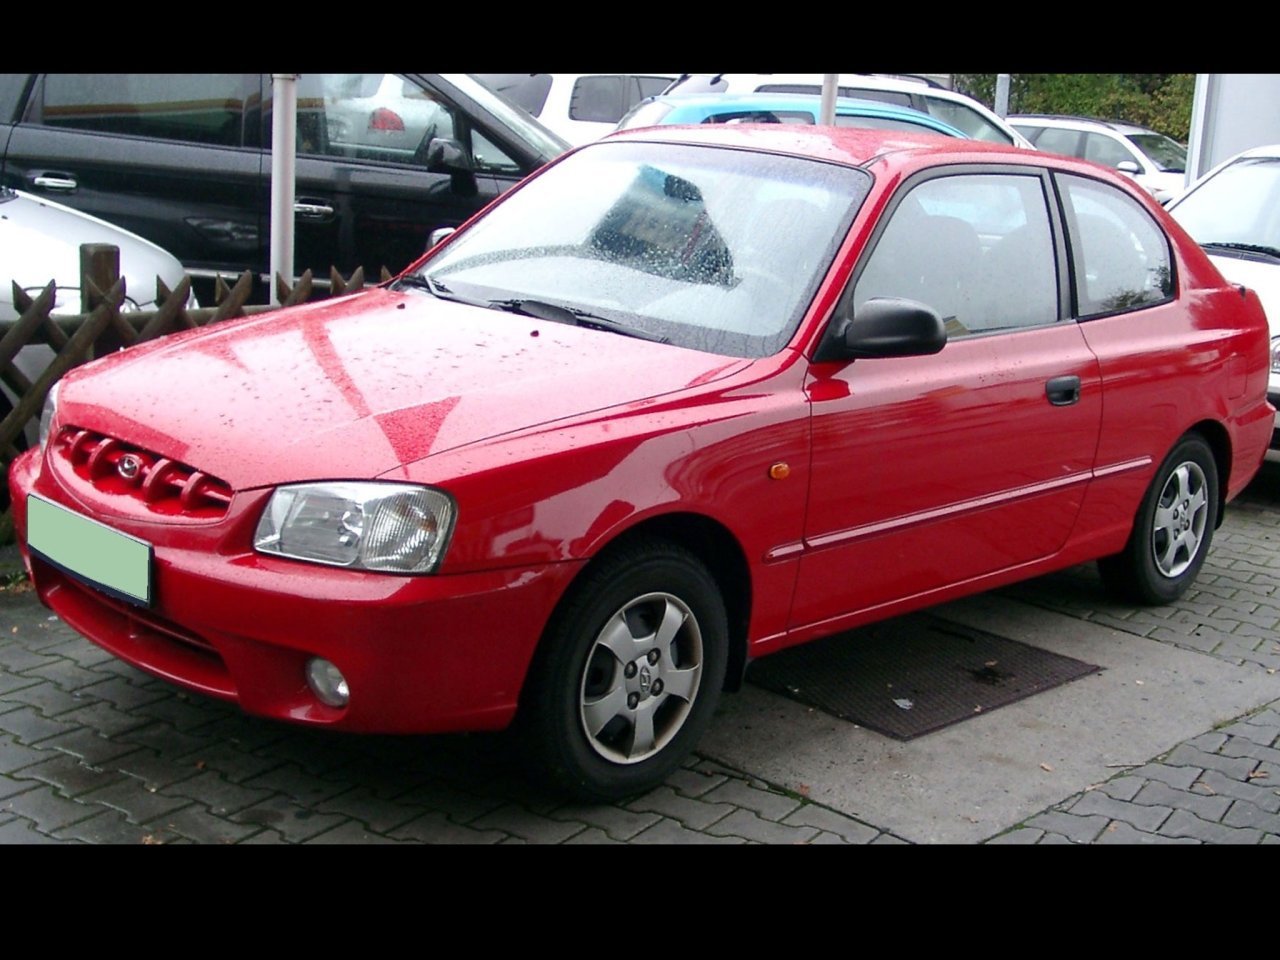 хэтчбек 3 дв. Hyundai Accent 2000 - 2003г выпуска модификация 1.3 AT (75 л.с.)